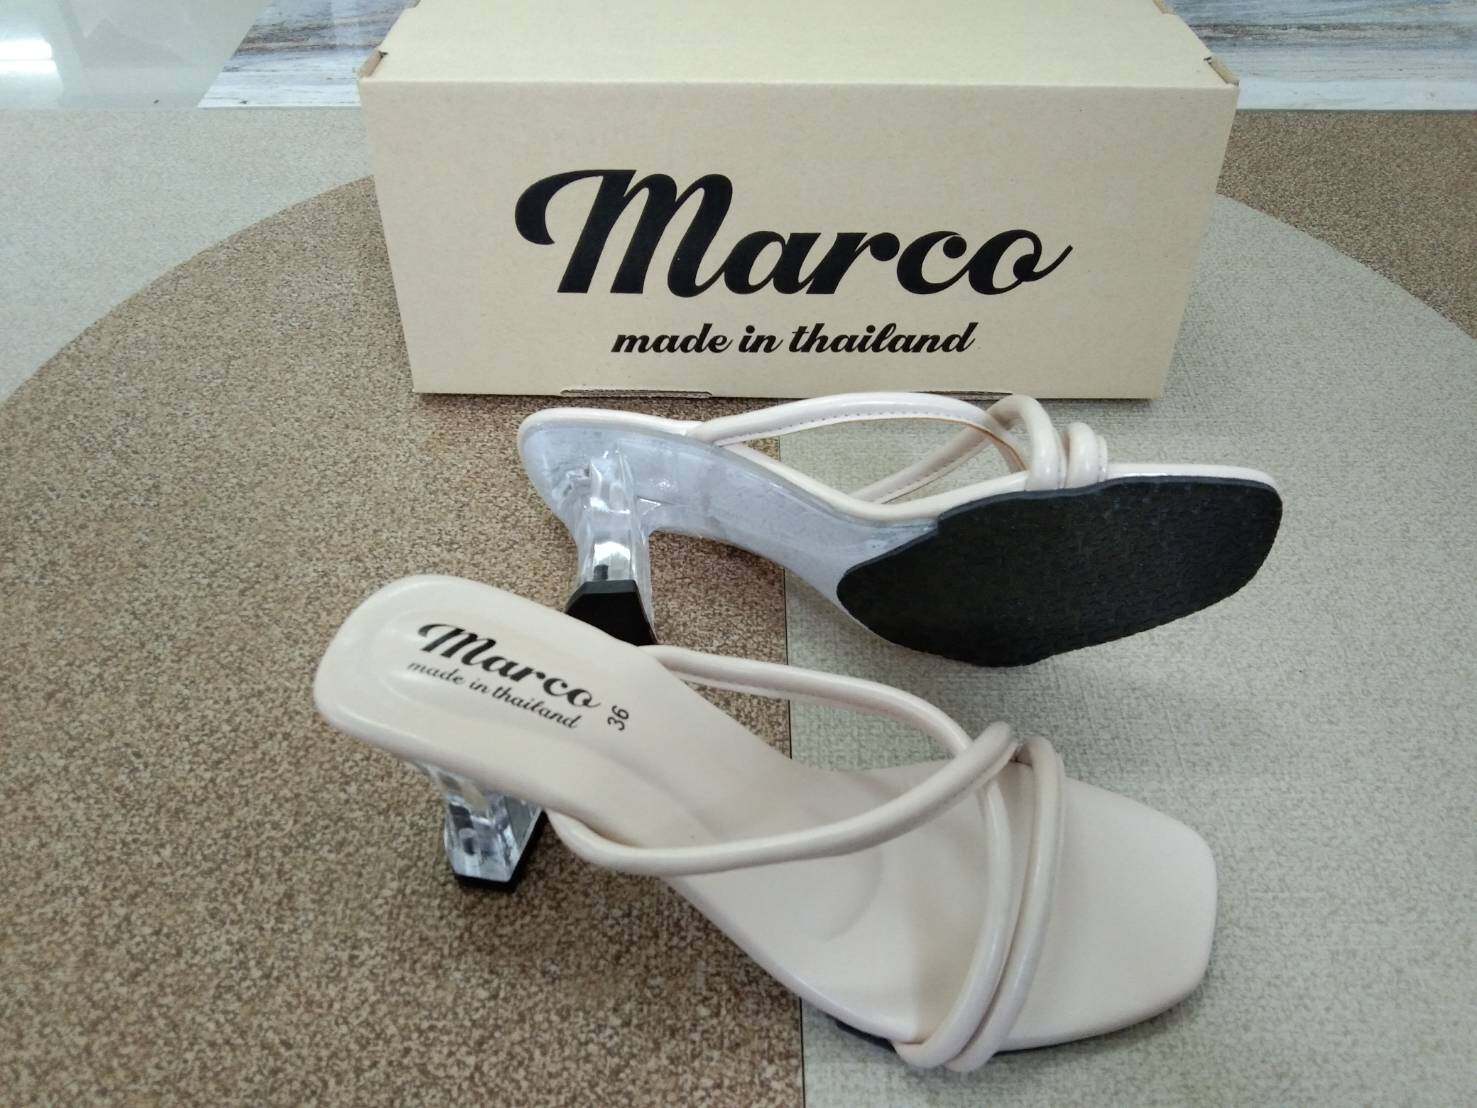 Marco รุ่น B1013 รองเท้าส้นแก้วผู้หญิง รองเท้าส้นสูง ส้นแก้ว สไตล์วินเทจ แนวใหม่ แบบขายดี พร้อมเสิร์ฟ